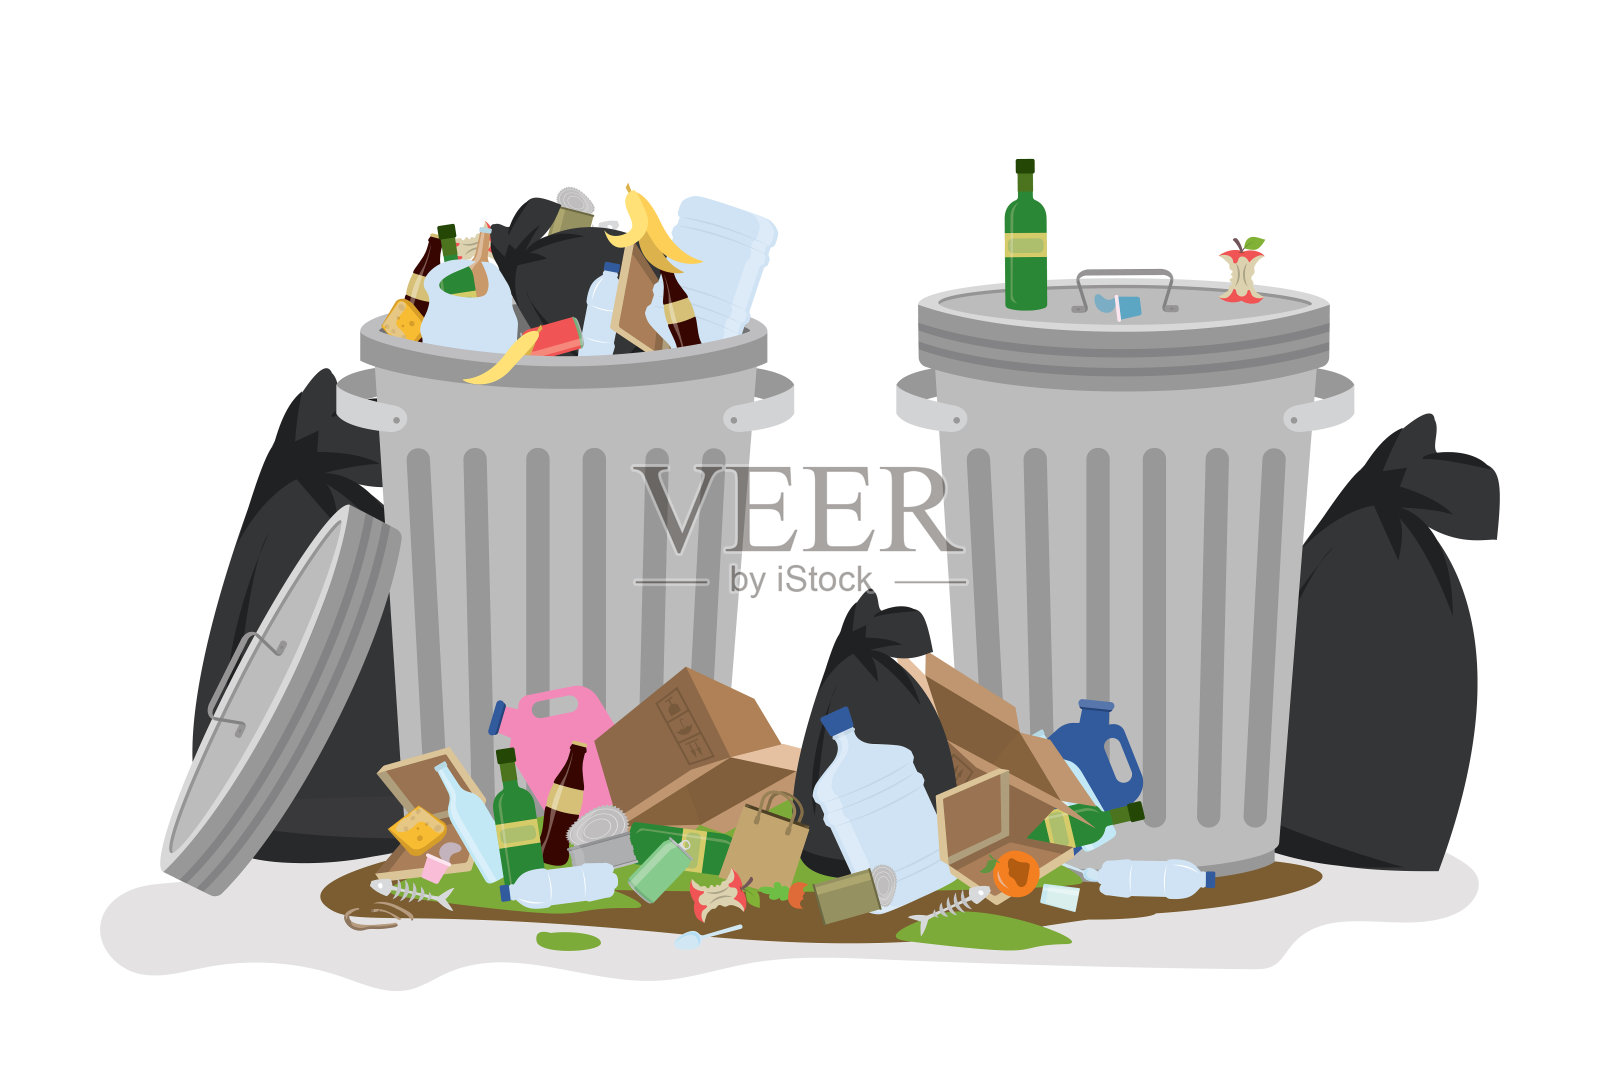 两个装满垃圾的金属垃圾桶。地板上有肮脏的垃圾和垃圾袋。设计元素图片